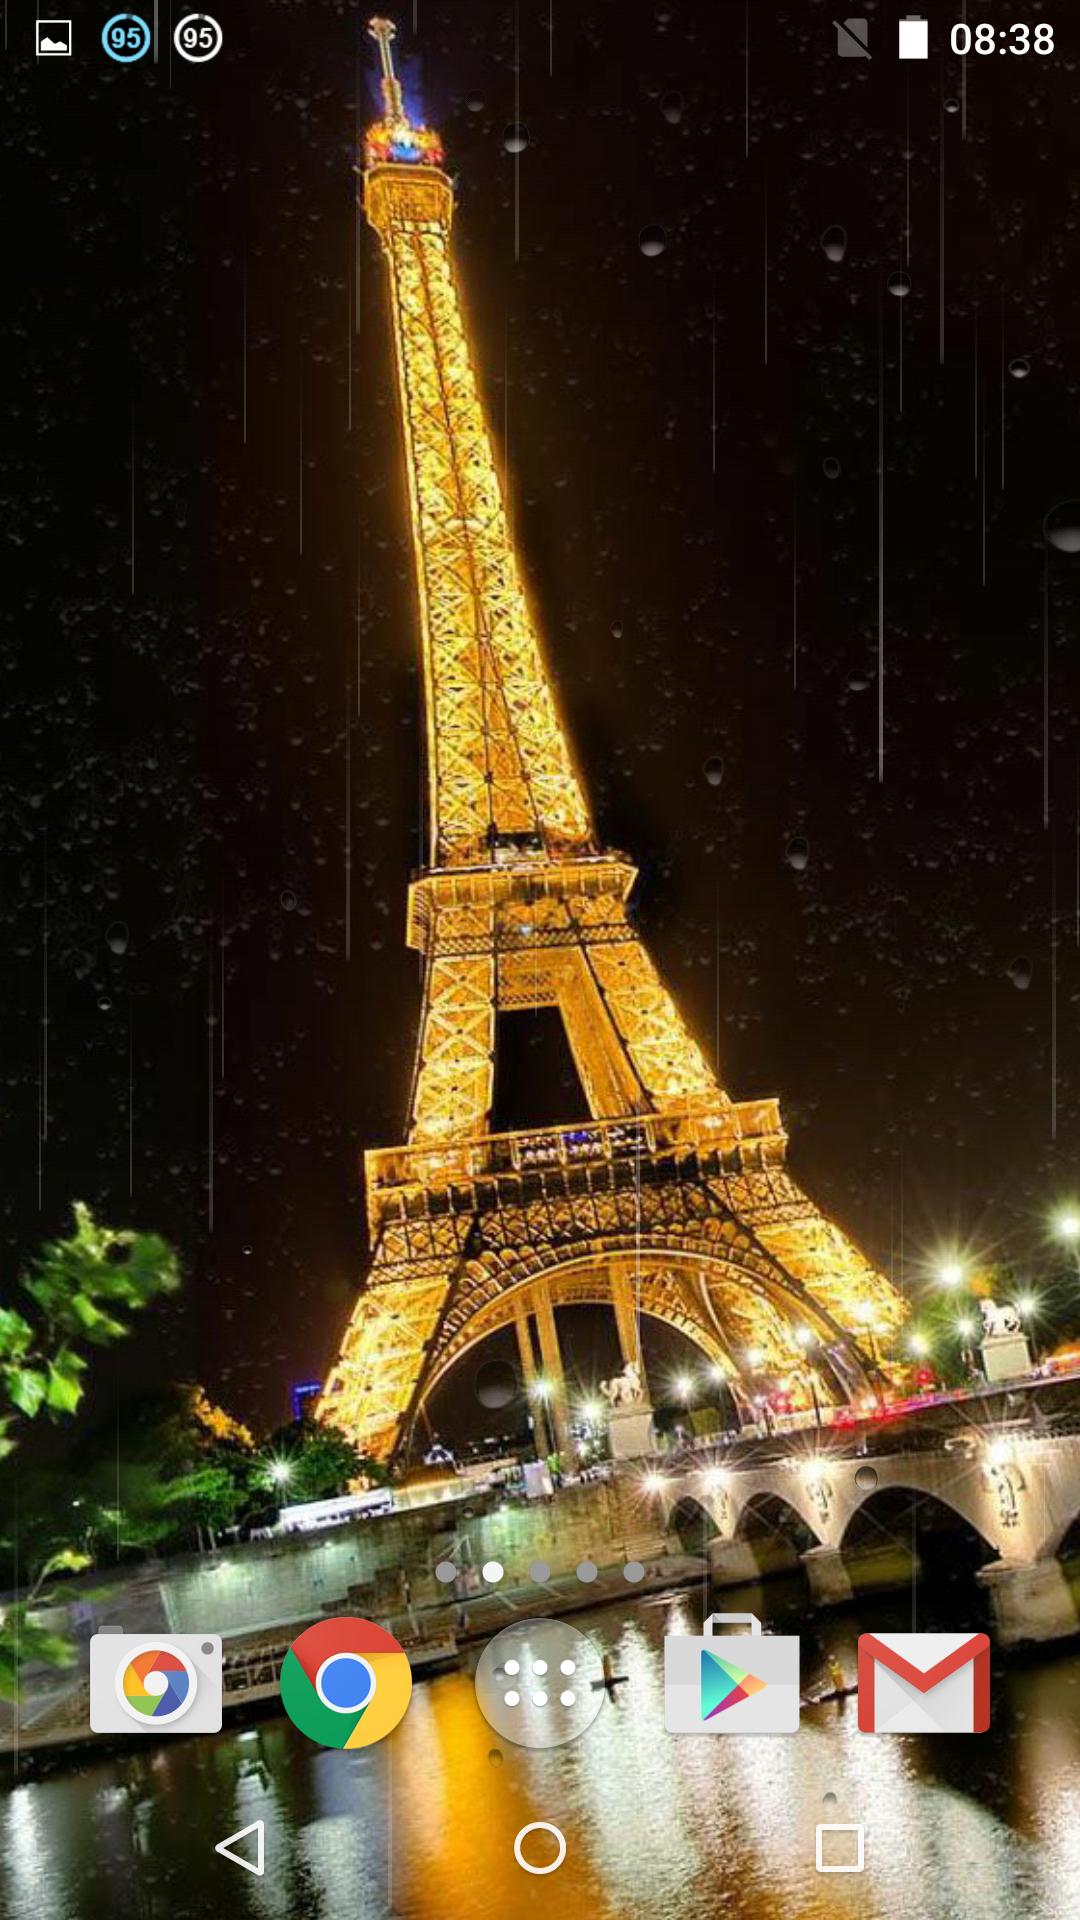 مطر باريس خلفية متحركة for android apk download